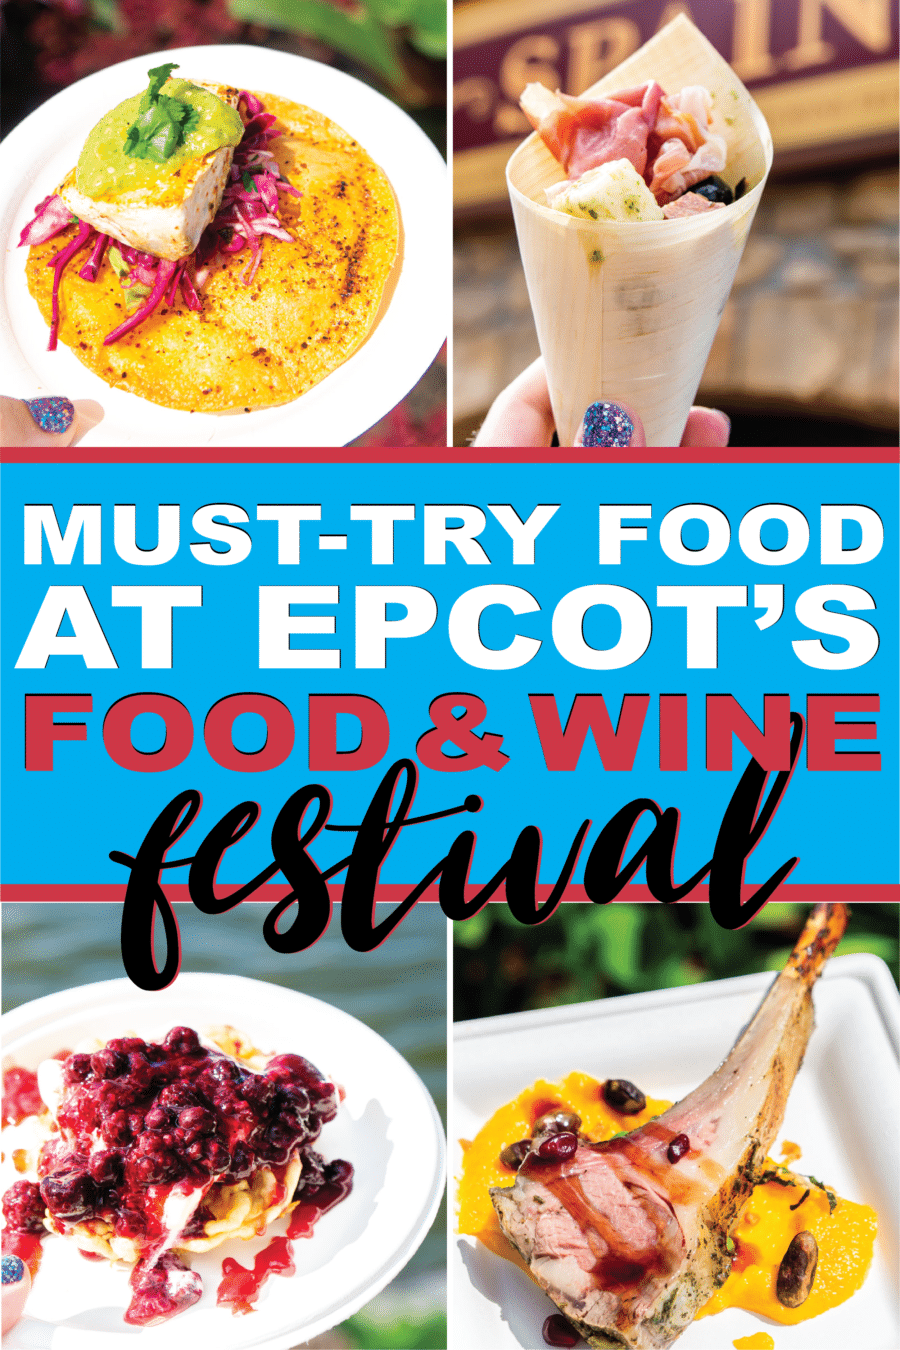 ایپکوٹ فوڈ اینڈ وائن فیسٹیول 2019 مینو پر ہر چیز کی تصاویر اور جائزے! جب آپ ڈزنی کے کھانے اور شراب کے میلے میں جاتے ہو تو 10 چیزوں کی فہرست۔ ڈزنی کے فوڈ اینڈ وائن فیسٹیول 2019 میں کھانے کی آخری رہنمائی ہے!